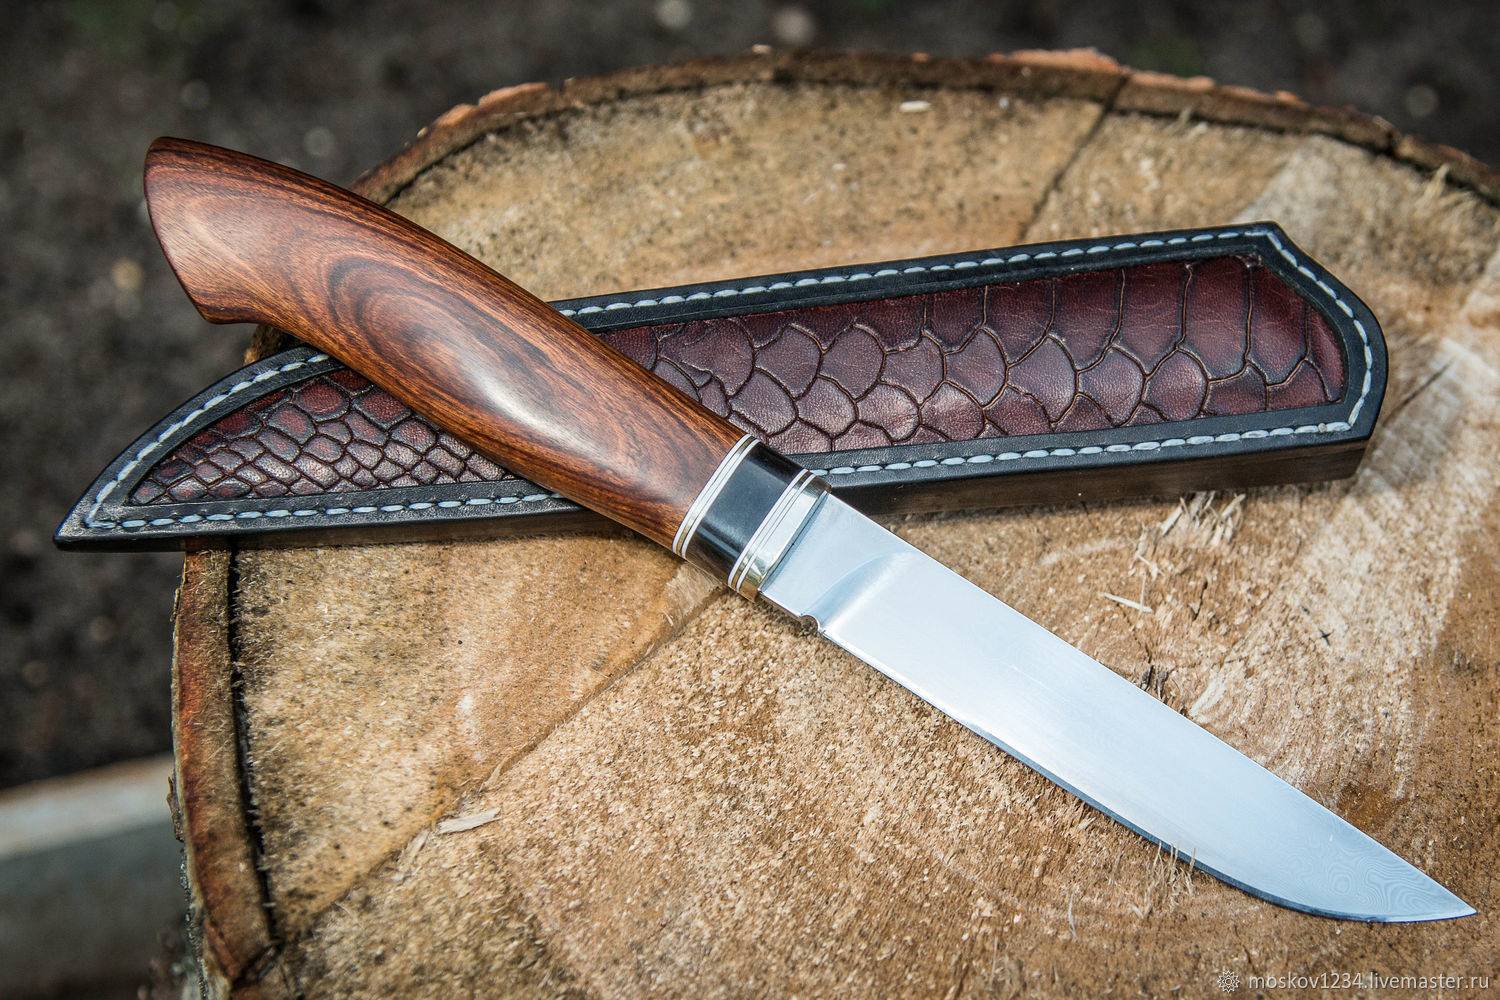 Охотничий нож своими руками: пошаговая инструкция, что для этого потребуется, процесс изготовления, чертежи клинков